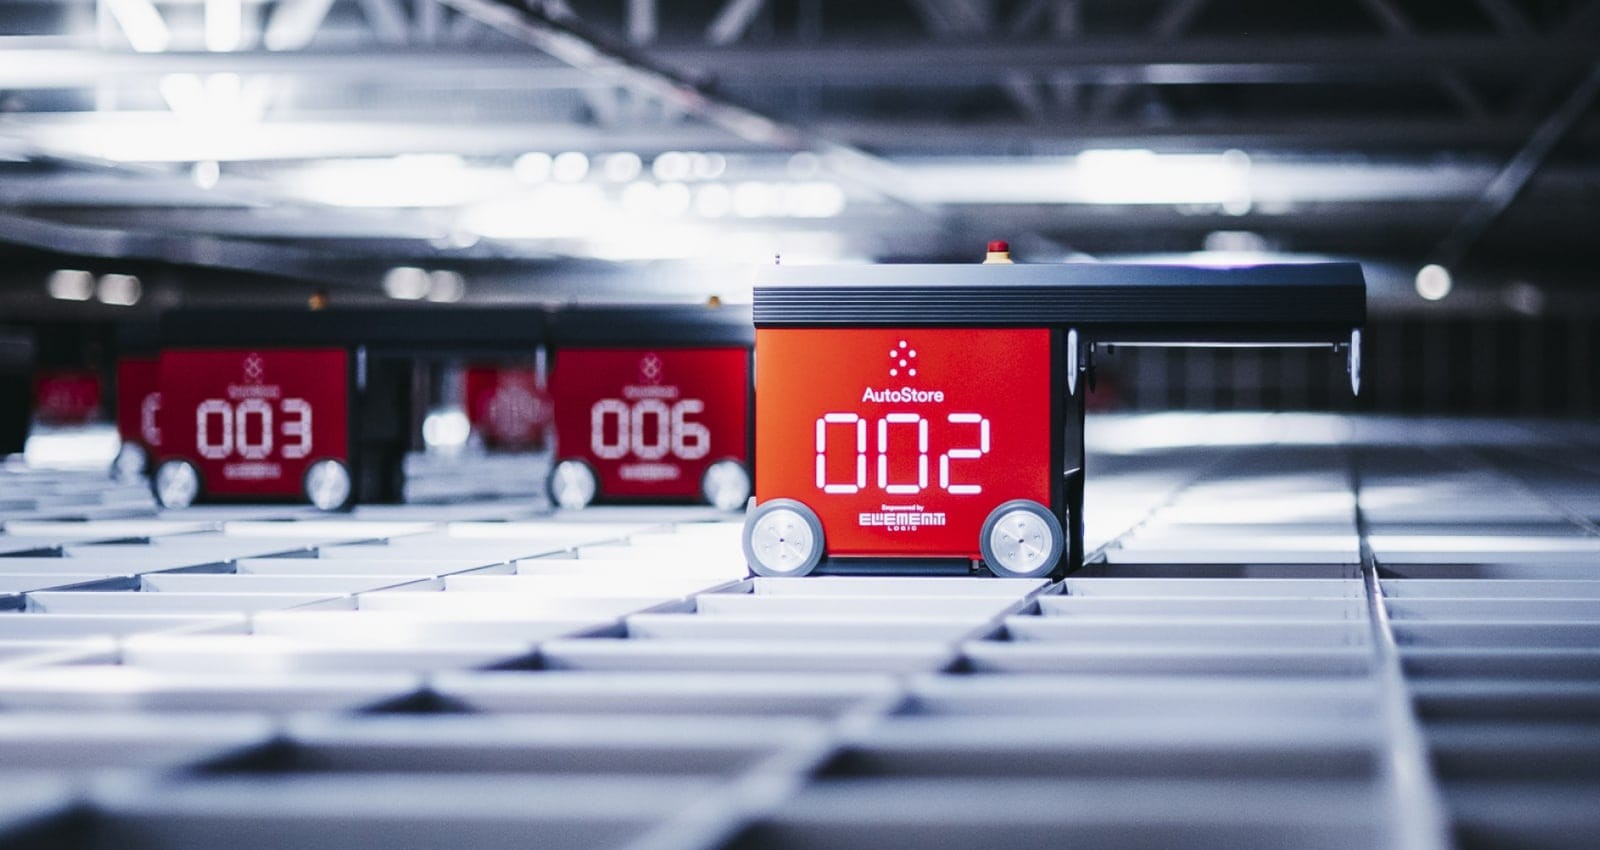 Robots de color rojo desplazándose por la rejilla de AutoStore